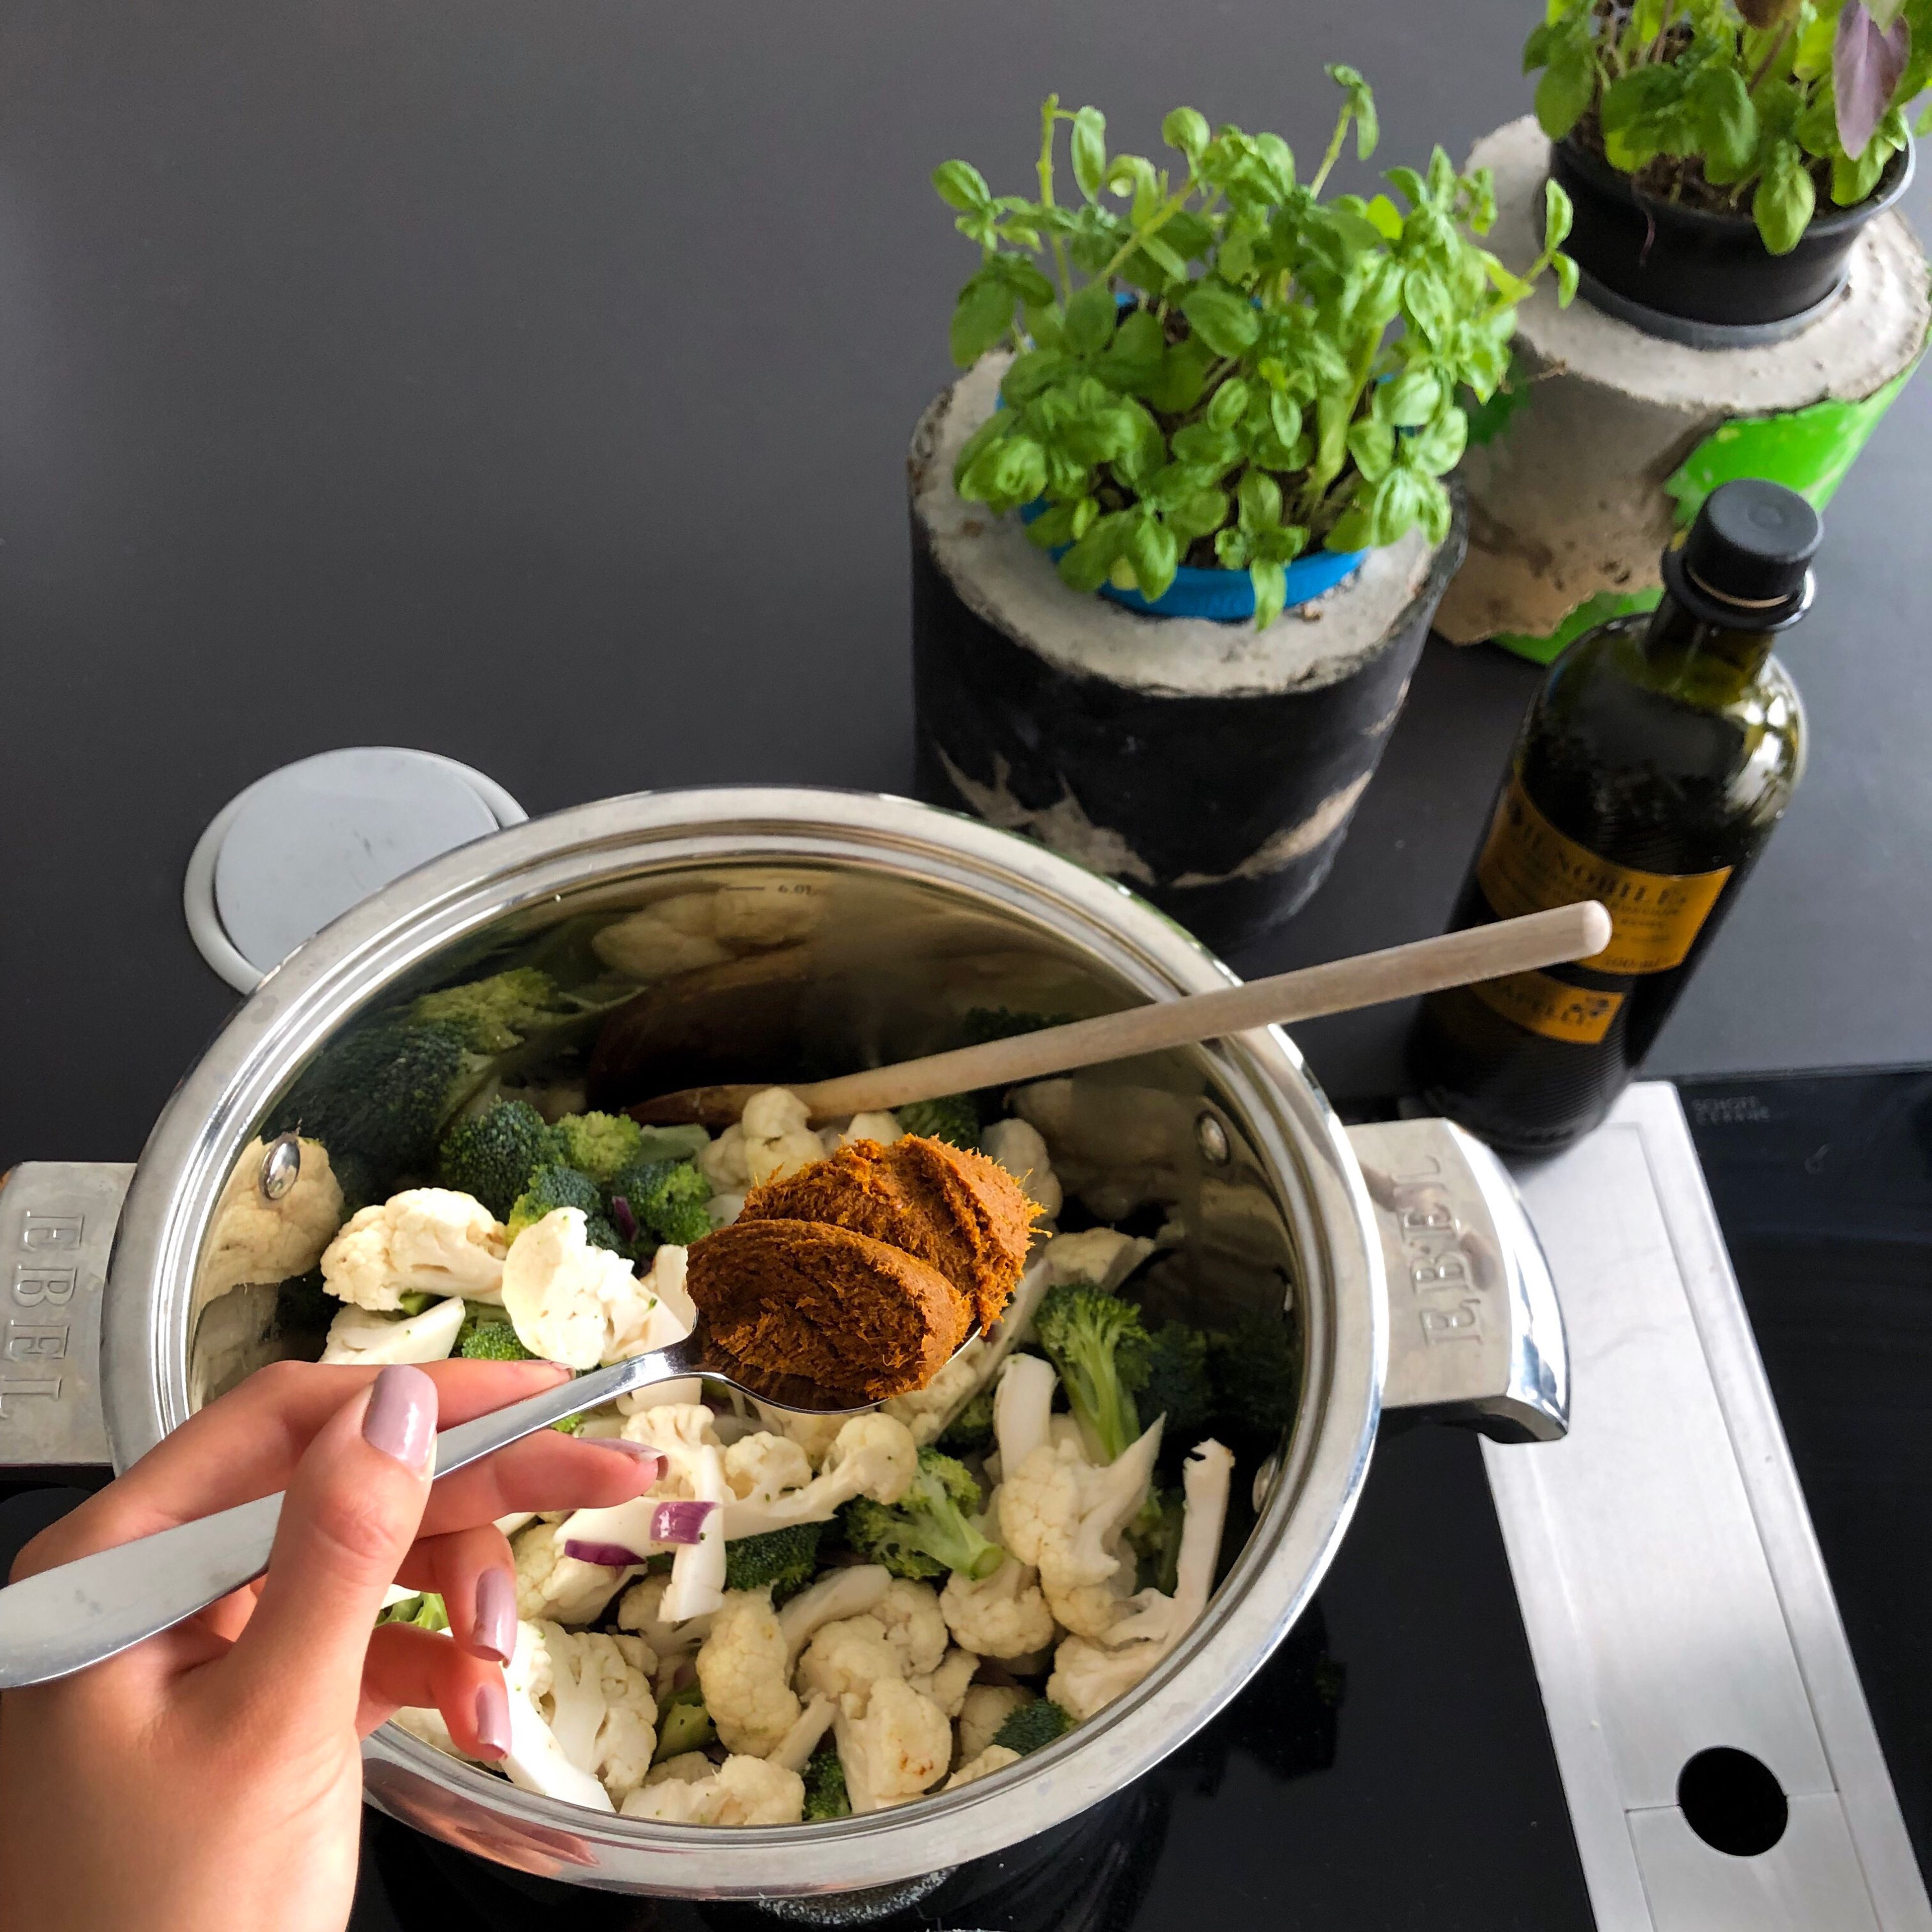 Blumenkohl, Brokkoli und Currypaste zu den Zwiebeln hinzufügen und für ca 5 Minuten mit dünsten. Je nach gewünschter Schärfe kann man zwischen roter und gelber Currypaste wählen.